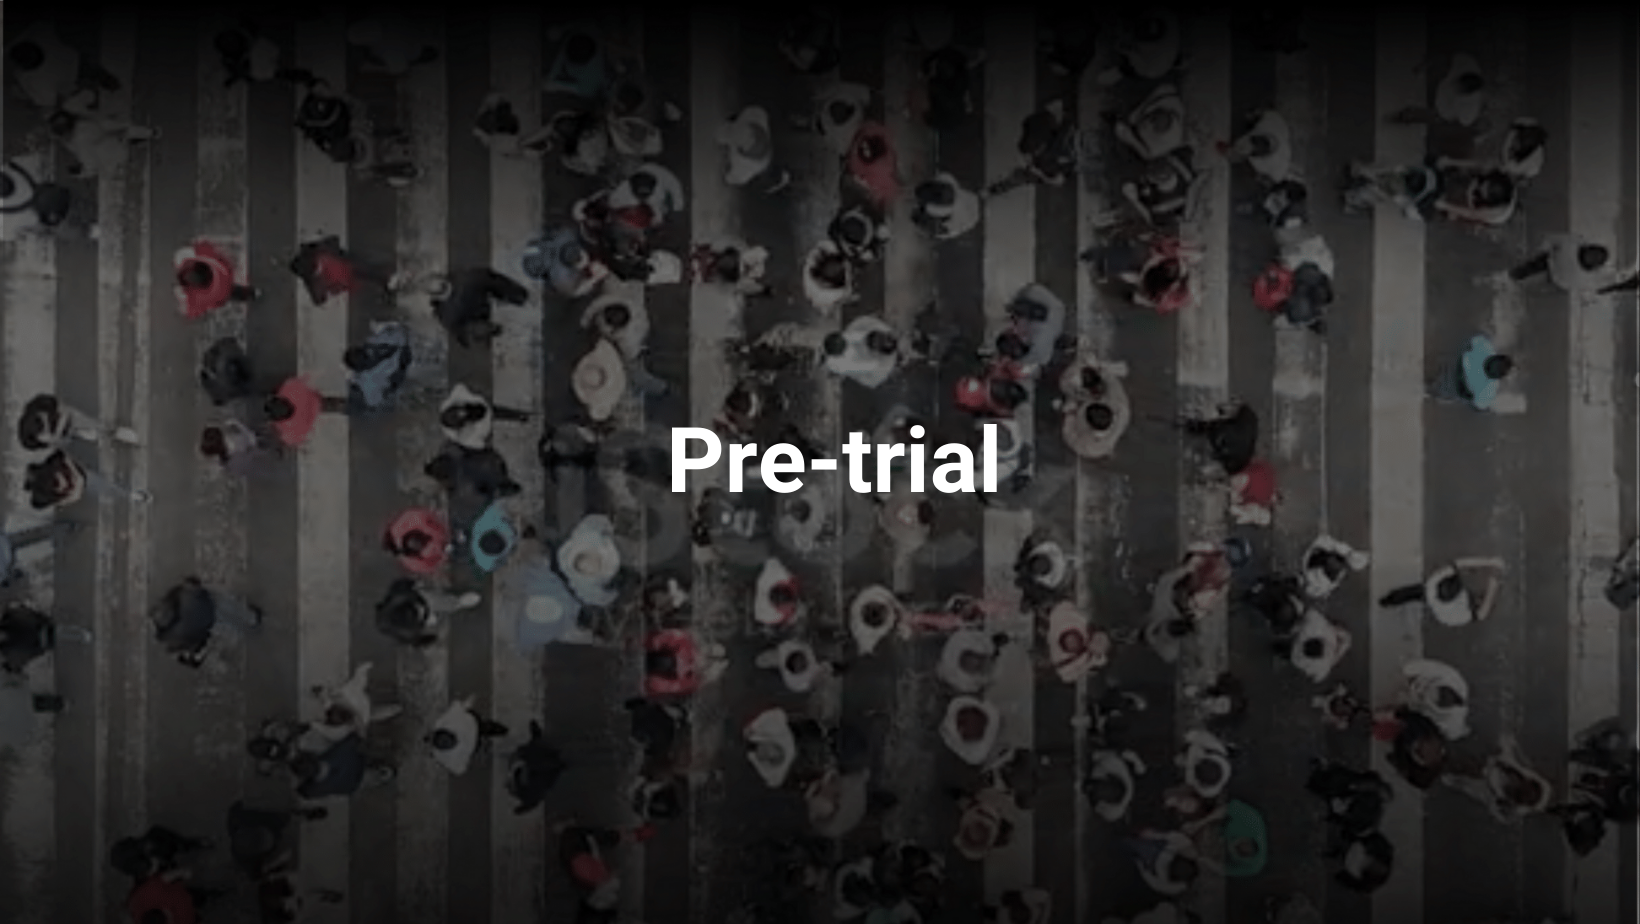 Pre-trial (1).png